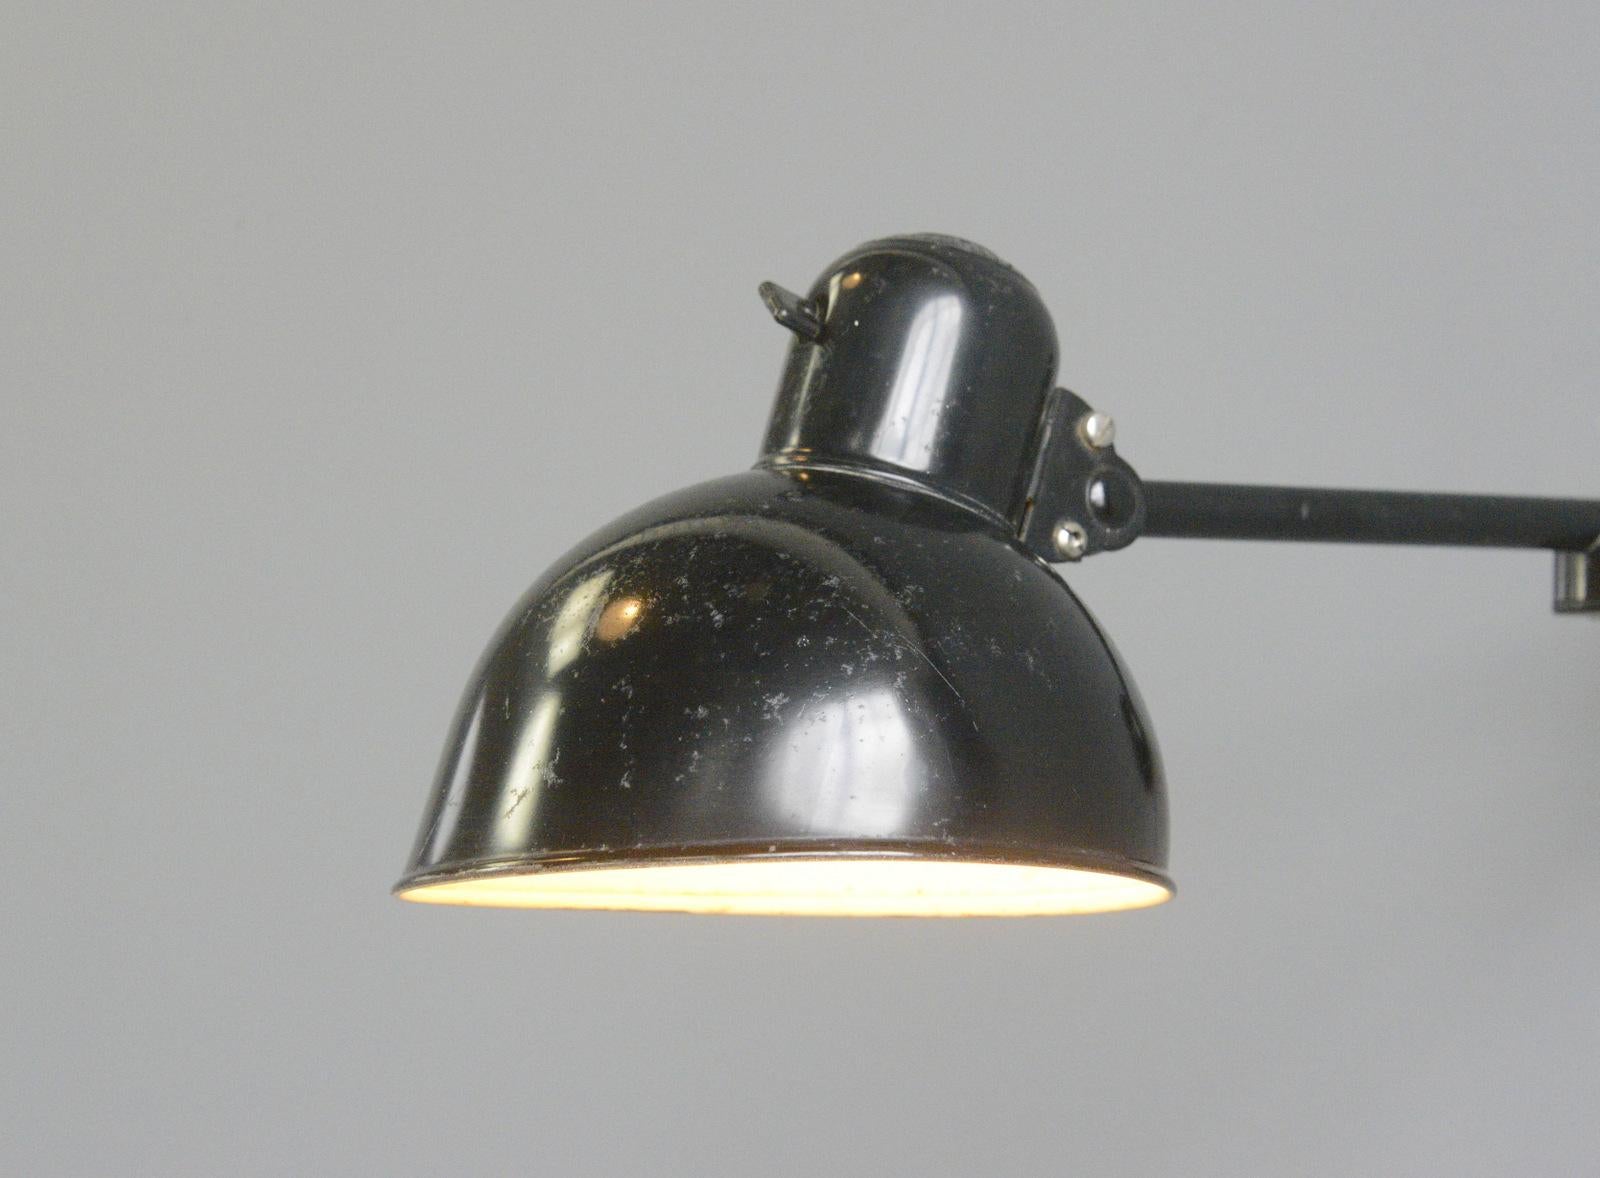 Bauhaus Kaiser Jdell Model 6723 Wall Lamp by Christian Dell